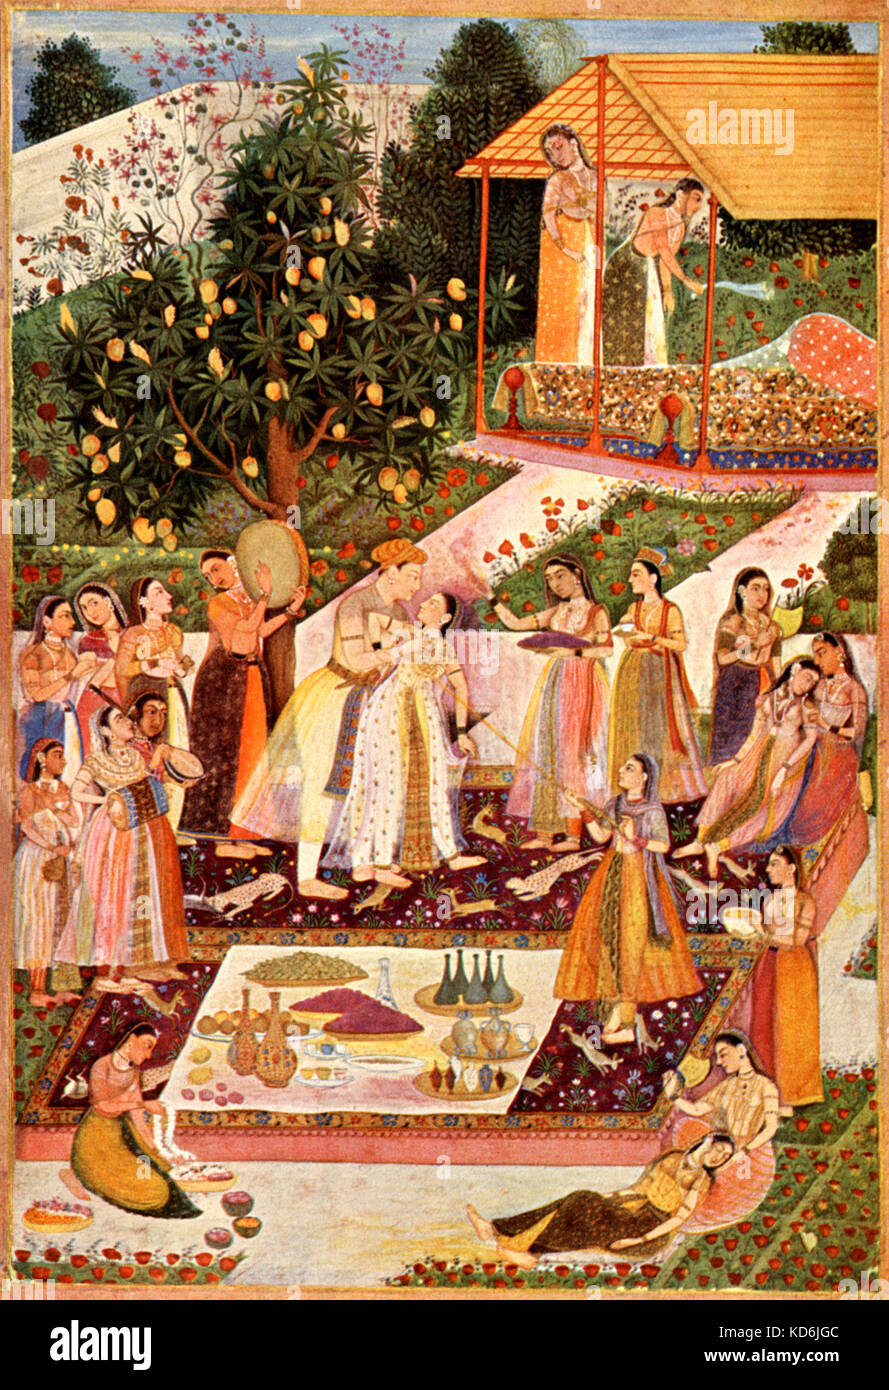 Klassische Malerei einer indischen Hochzeit außerhalb. . Mit Mädchen spielen die Sitar, Tabla und Schlagzeug. Nationalbibliothek, Wien Stockfoto